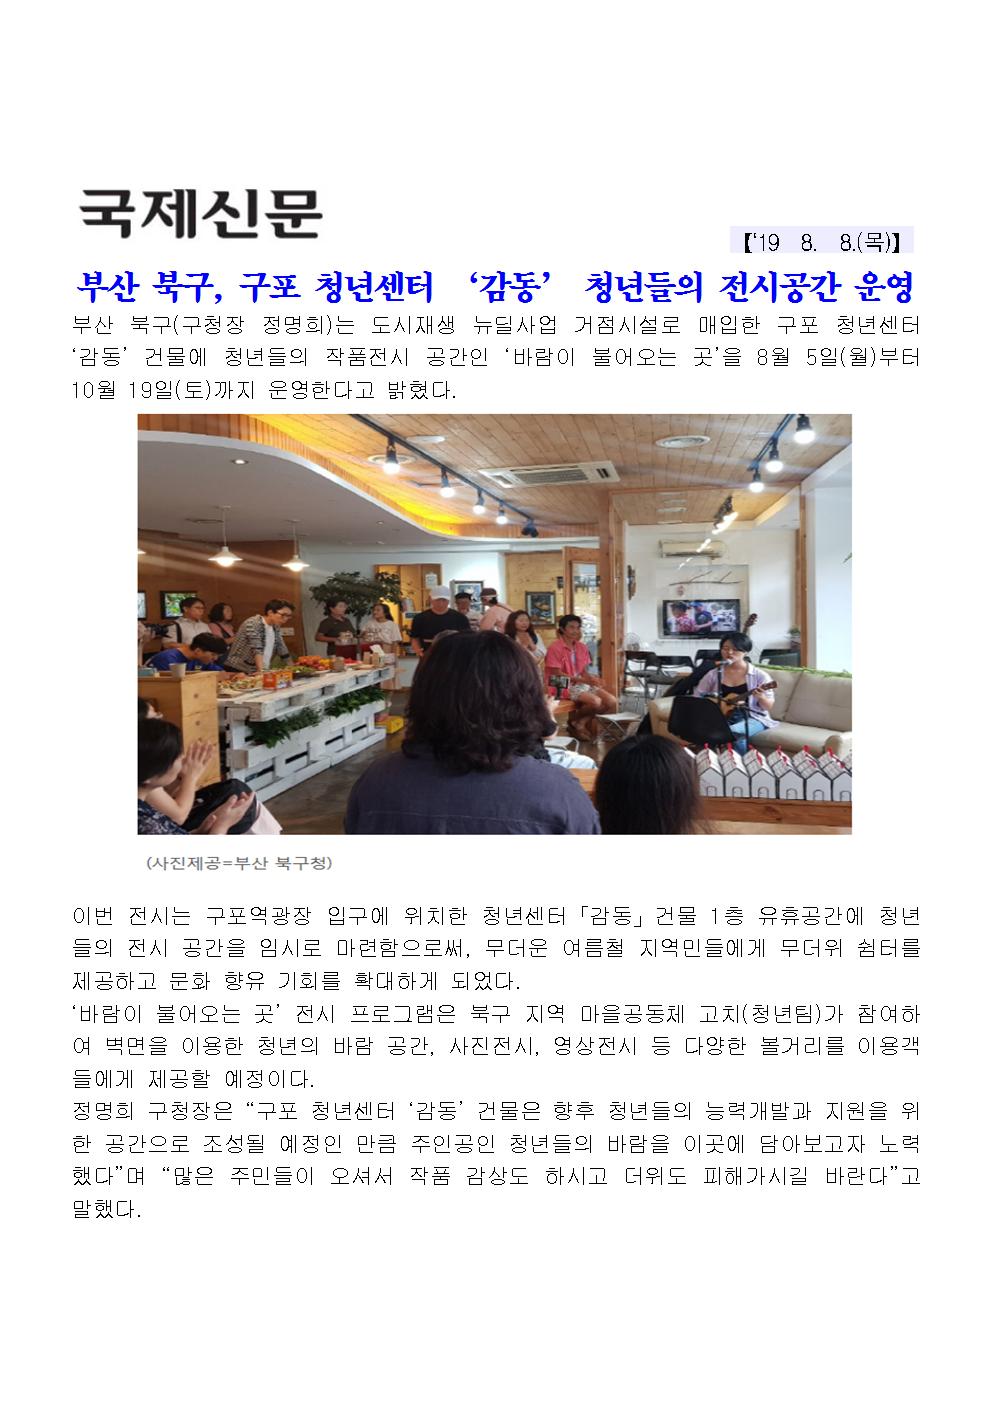 부산 북구, 구포 청년센터 ‘감동’ 청년들의 전시공간 운영(2-1-7)